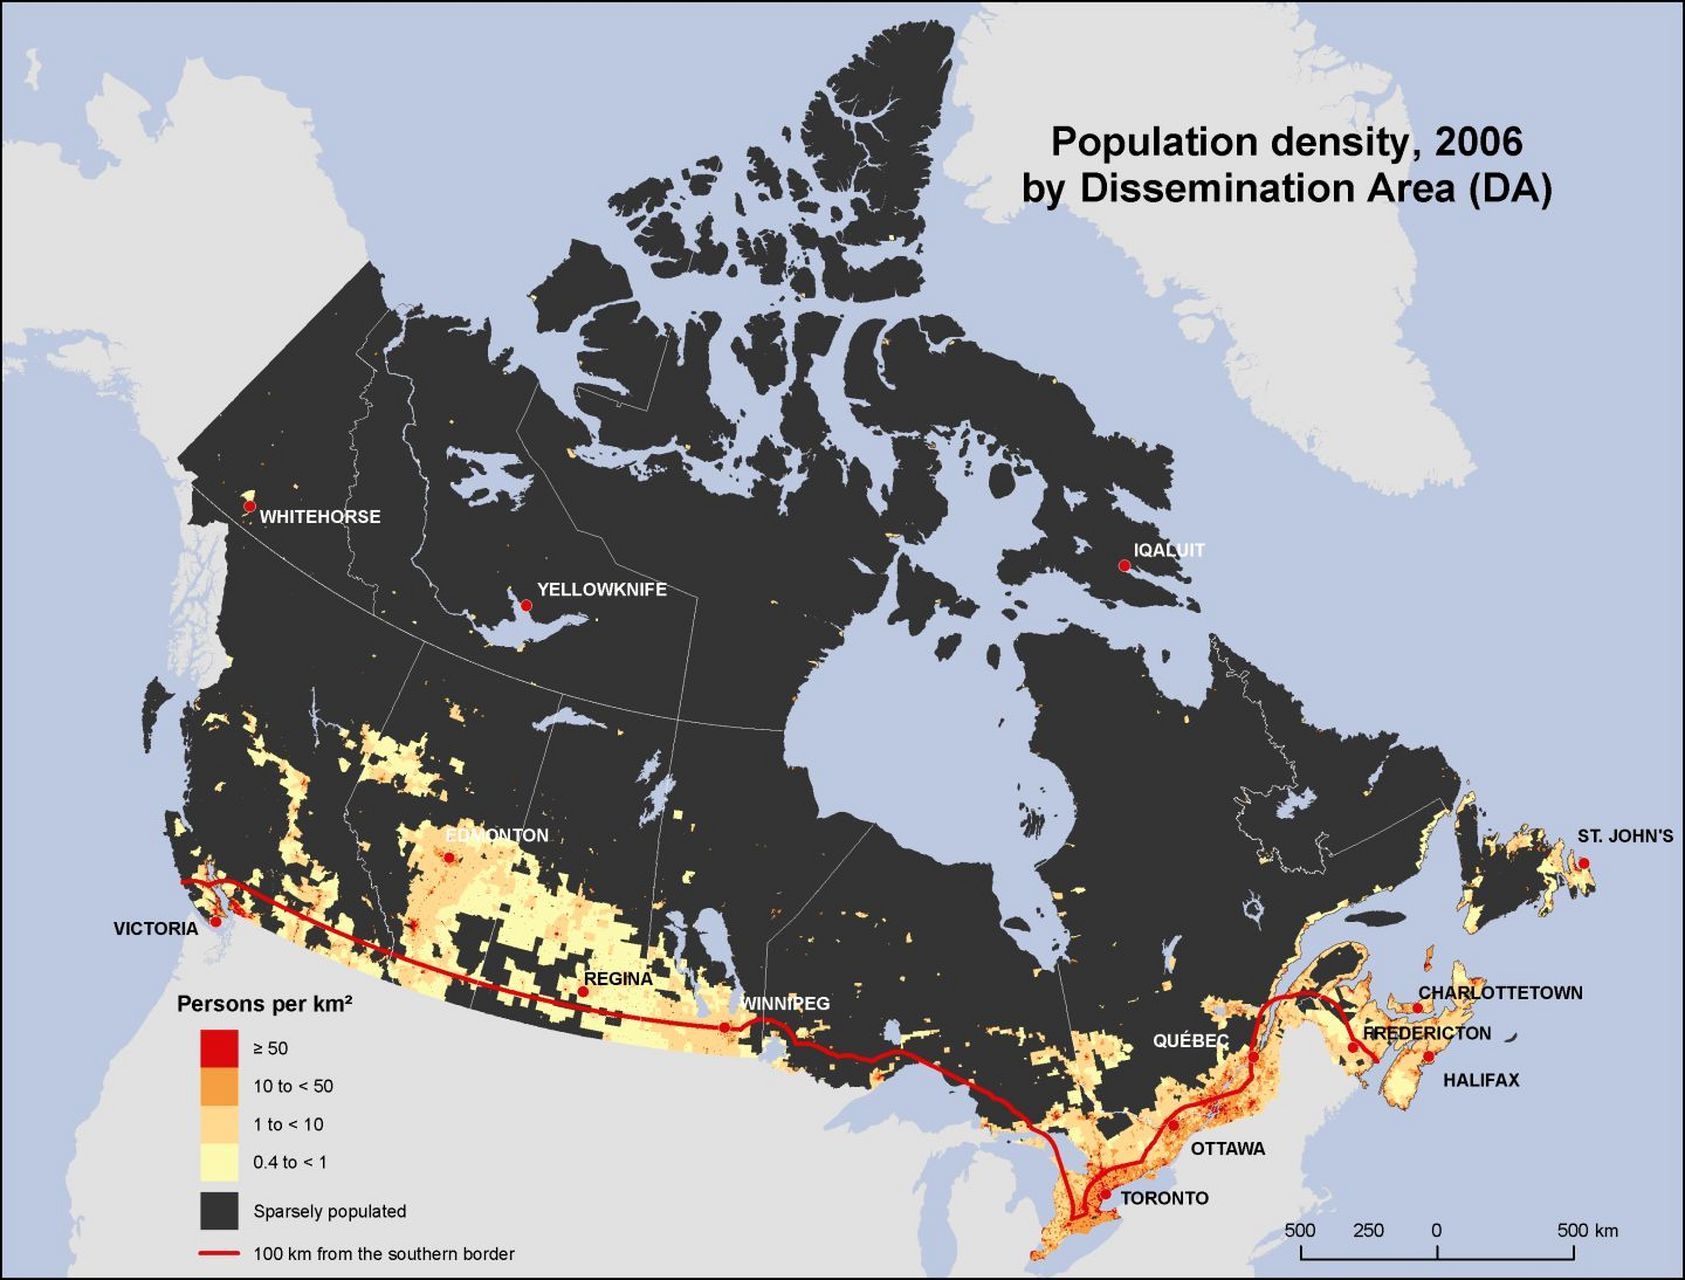 加拿大人口分布地图图片